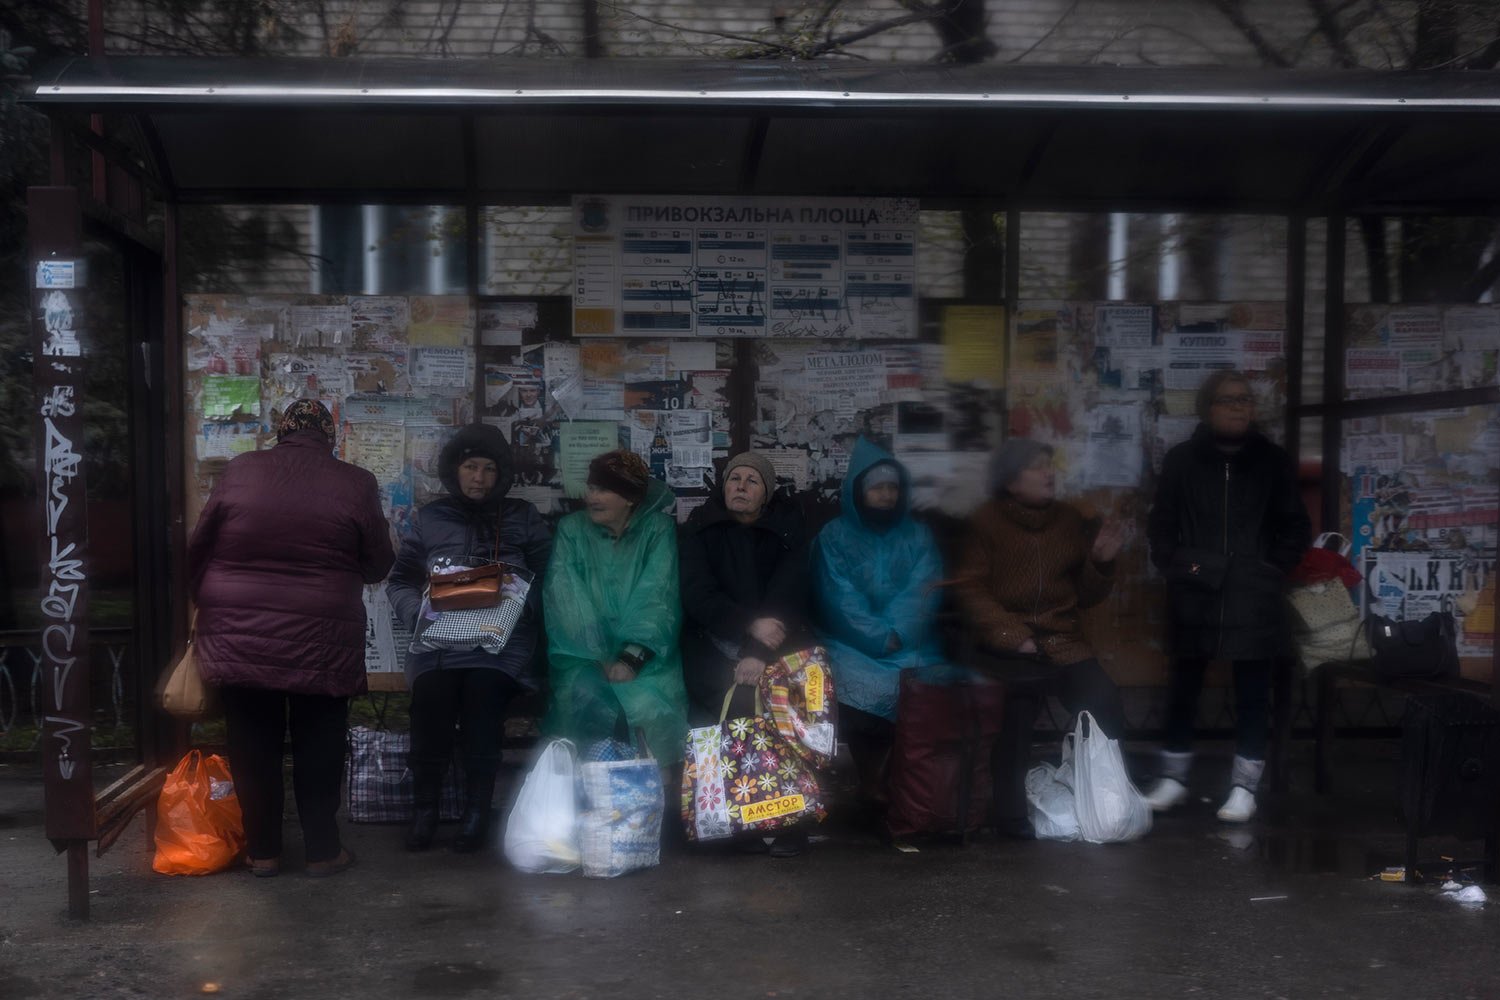  Women wait at a bus station in Kramatorsk, Ukraine, Thursday, April 14, 2022. (AP Photo/Petros Giannakouris) 